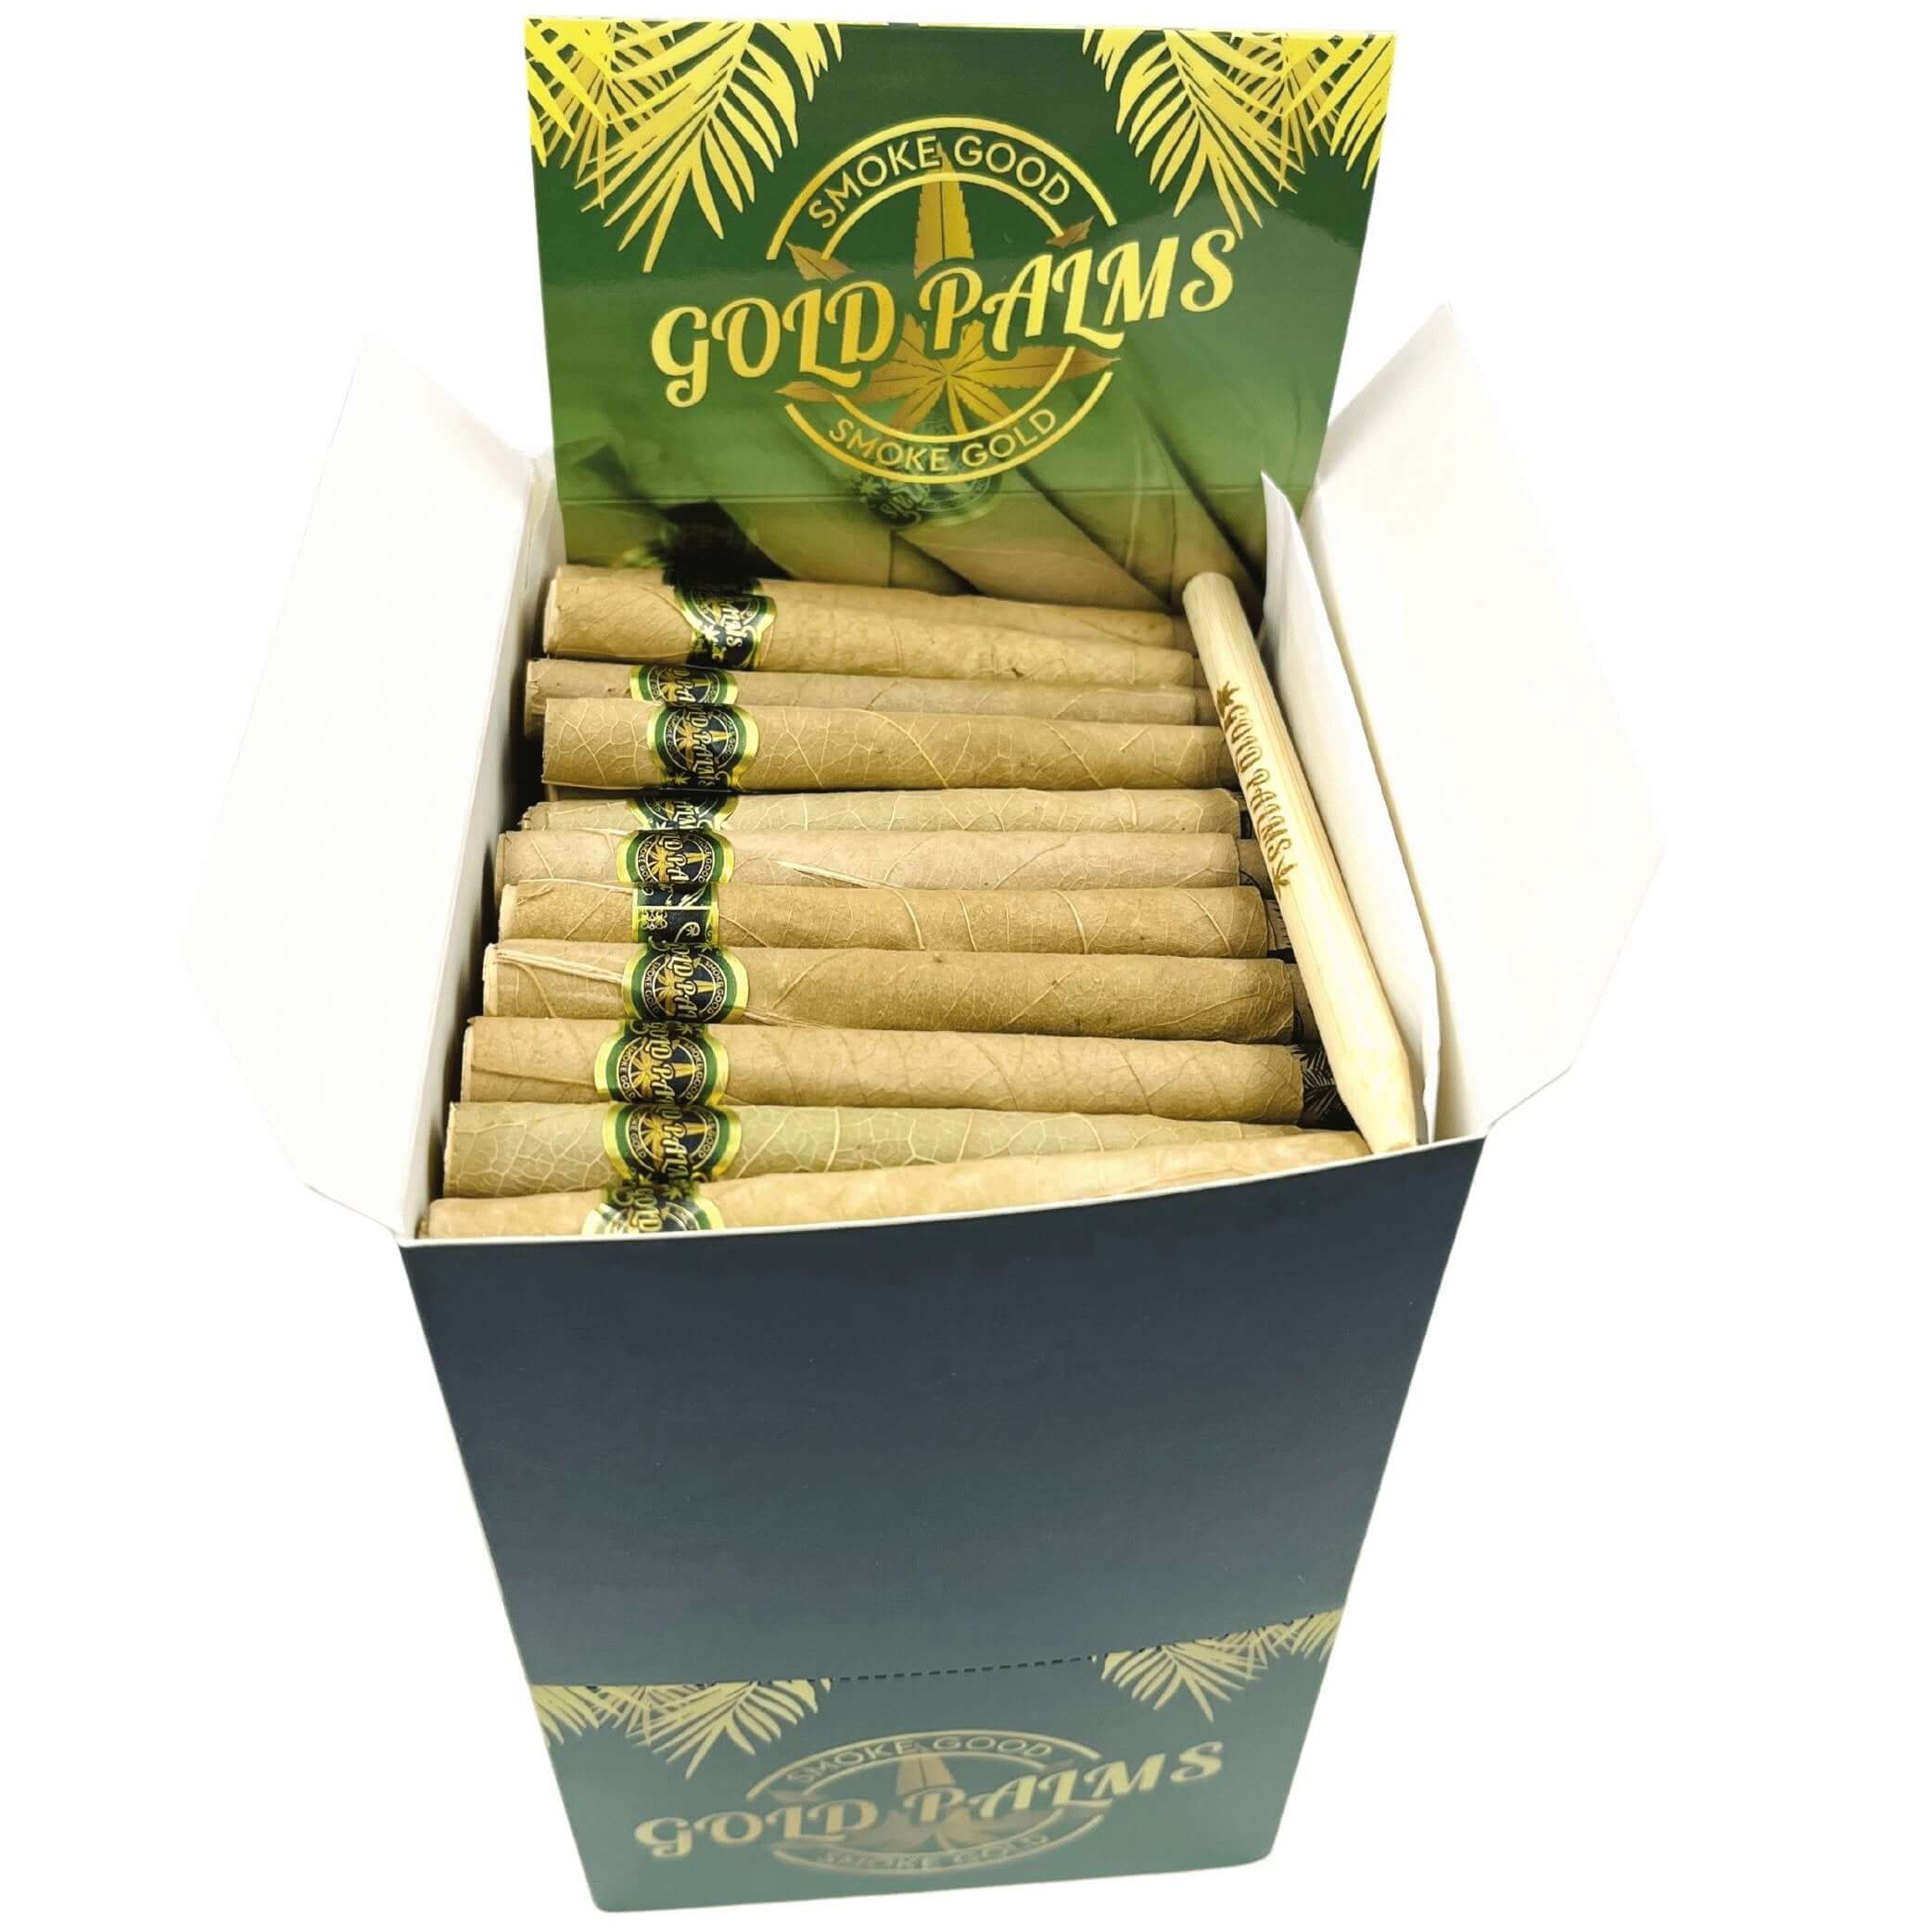 Detailansicht der in der Gold Palms Bulk Box enthaltenen Blunt Wraps, unterstreicht die Qualität und Natürlichkeit.